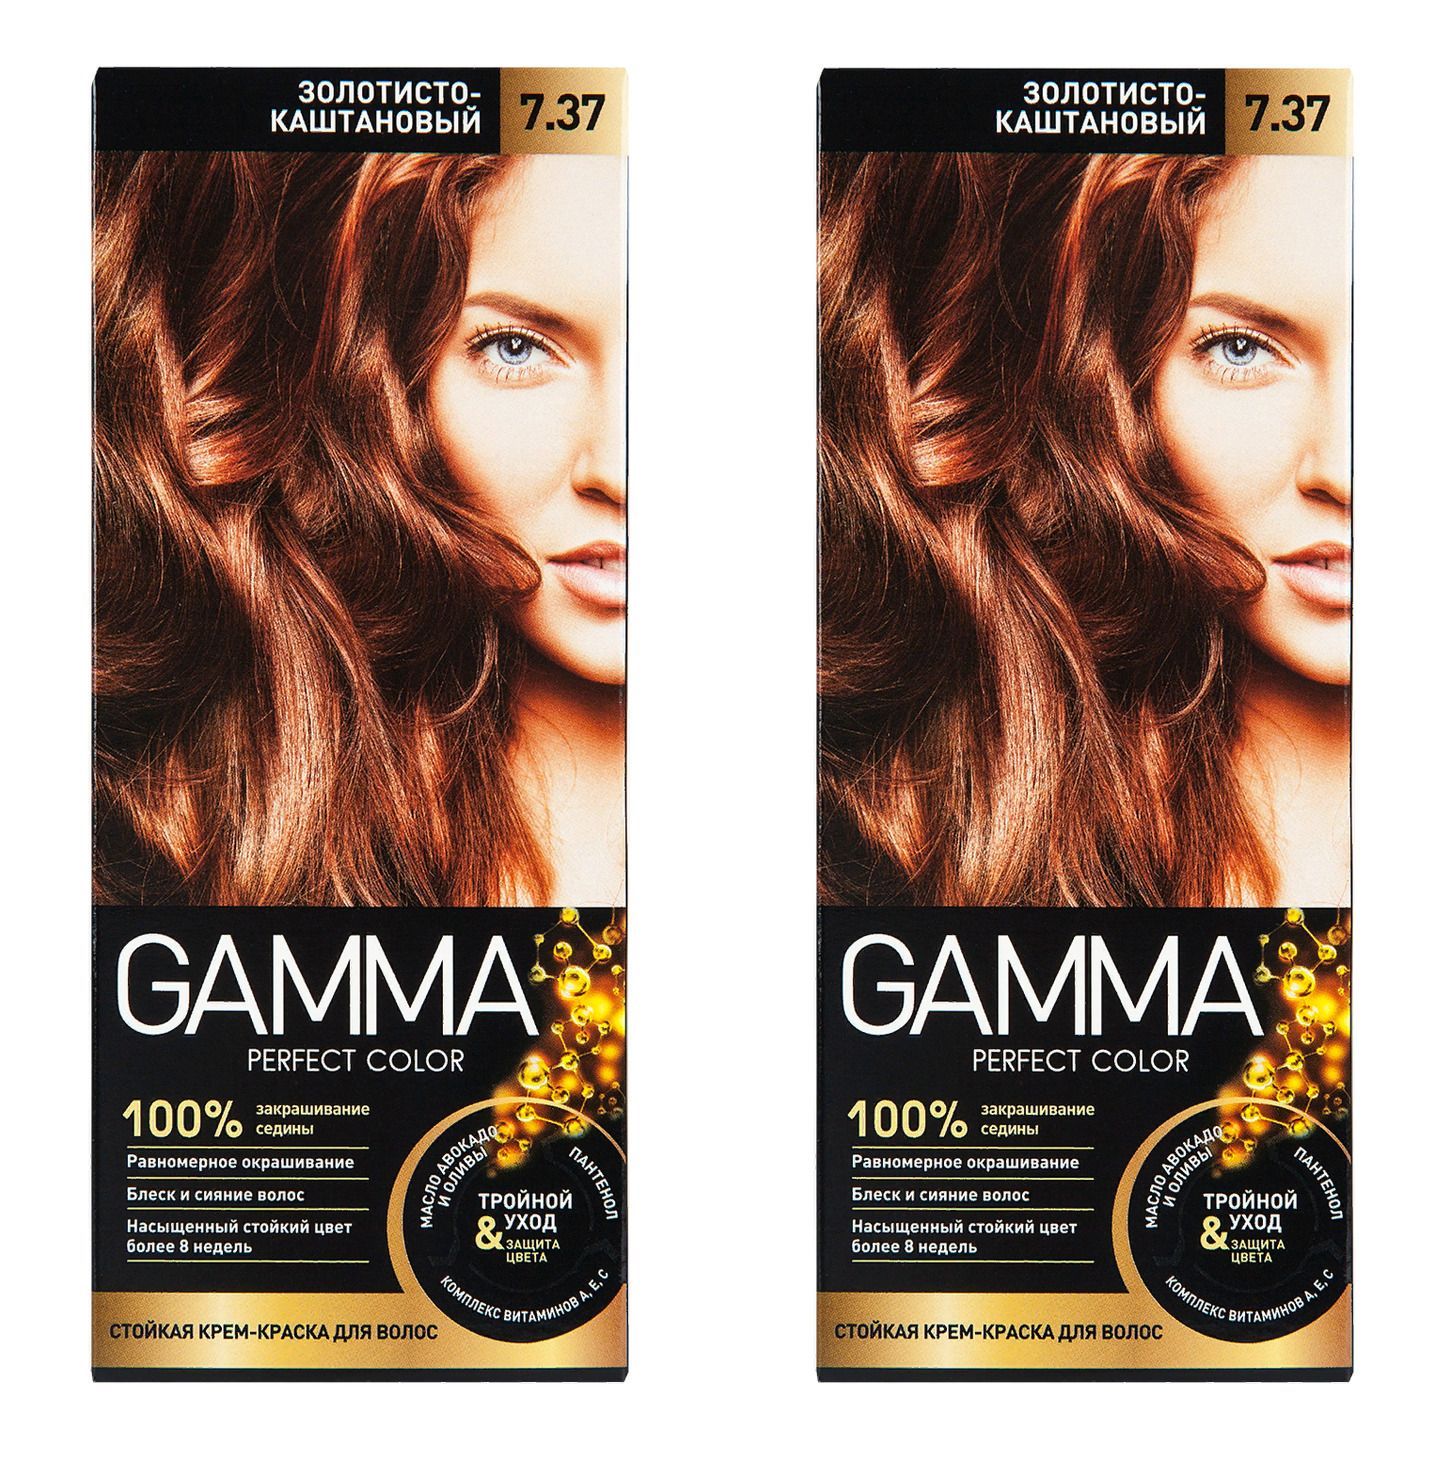 Каштановая 50. Гамма краски. Gamma краска для волос. Краска для волос Gamma perfect Color тон 7.1. Краска гамма антивандальная.